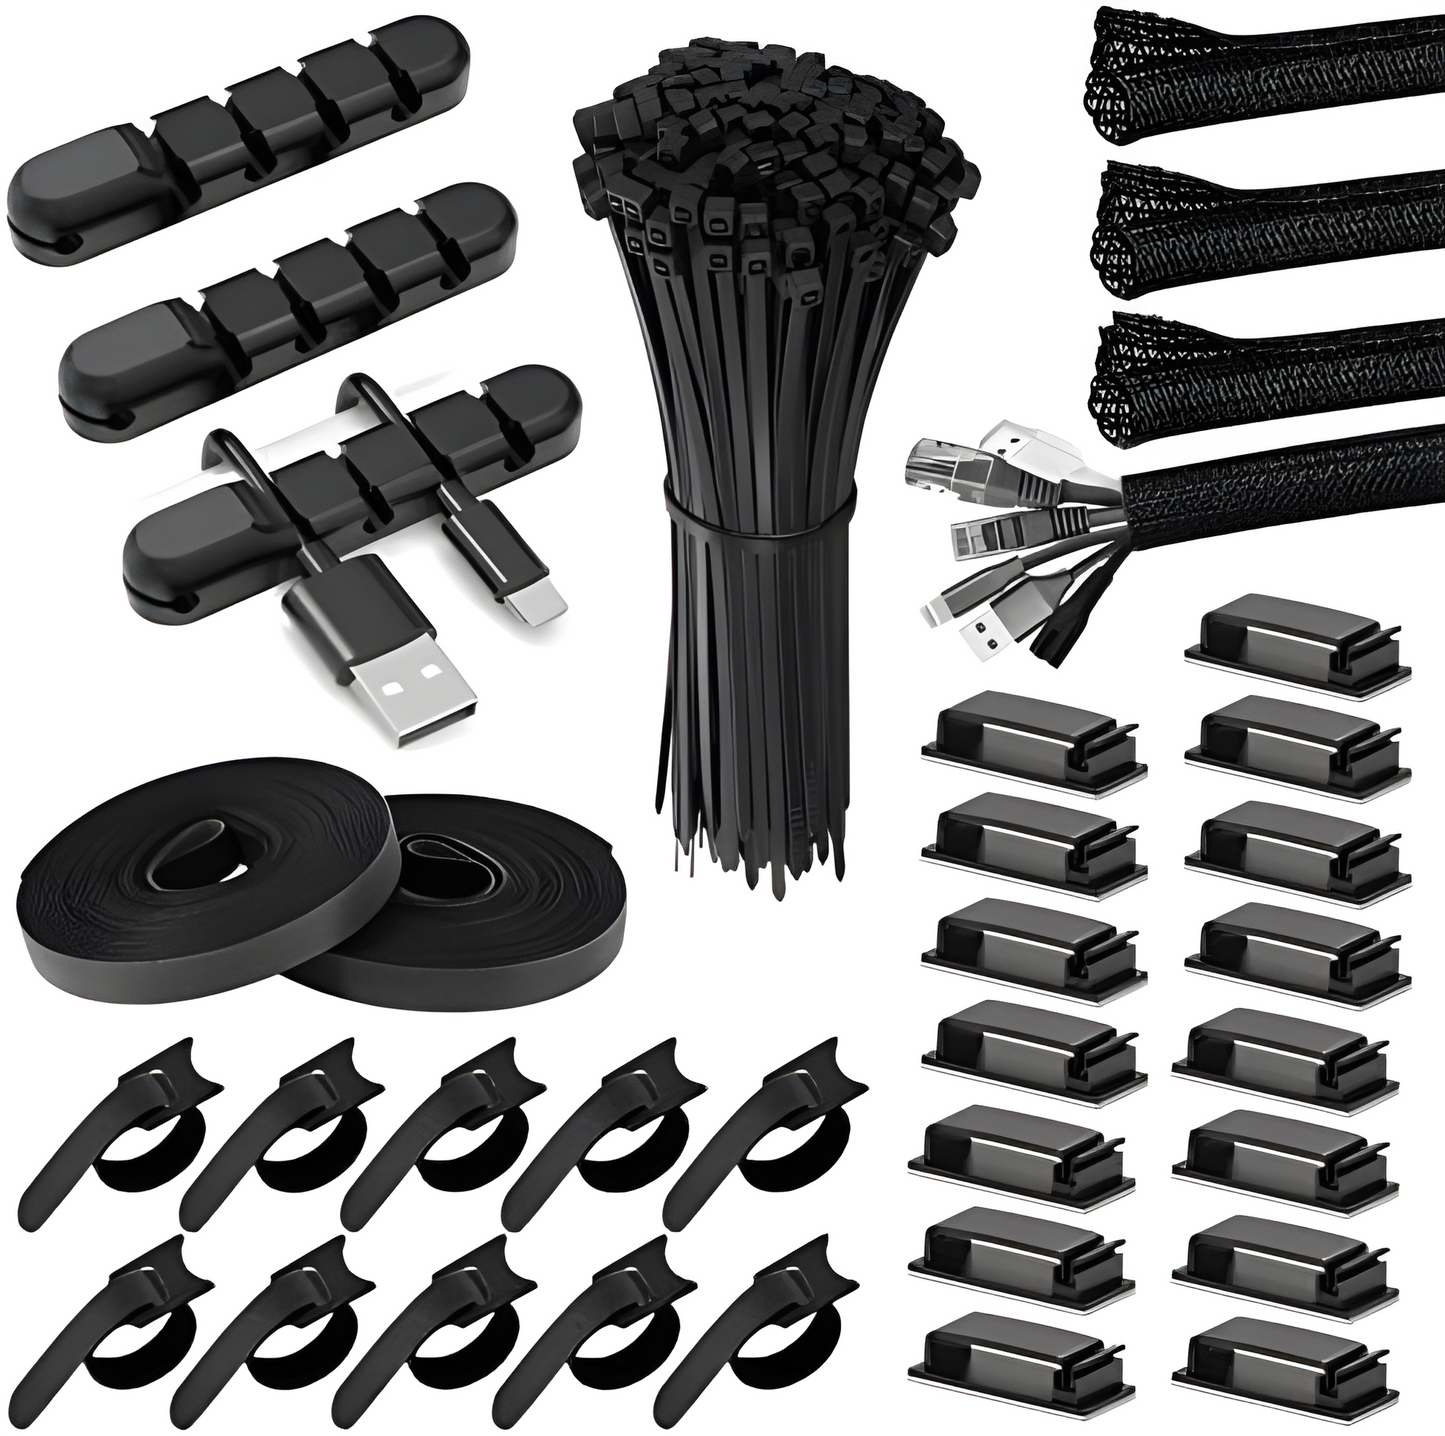 Cable Management Kit black